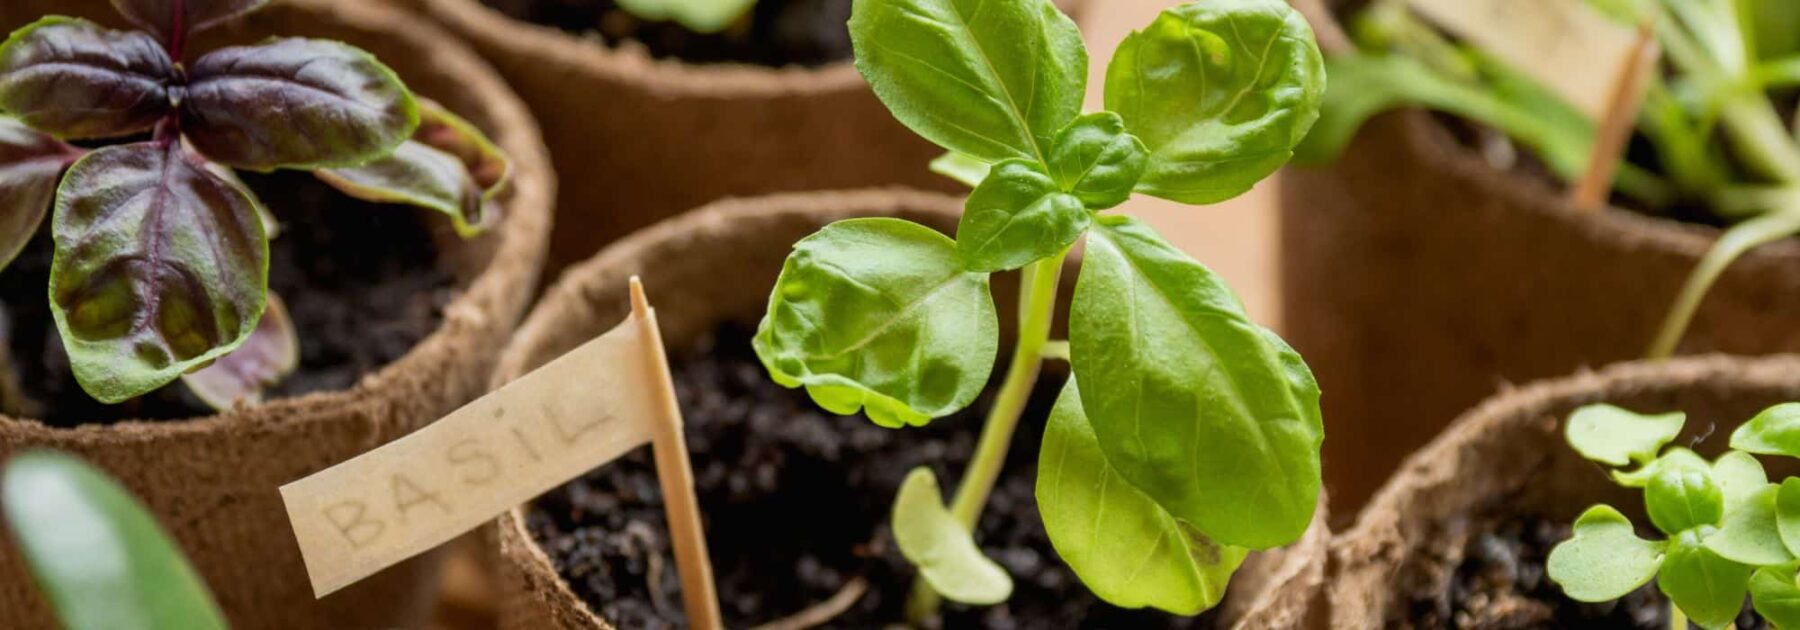 Como obter ou multiplicar plantas aromáticas gratuitamente?